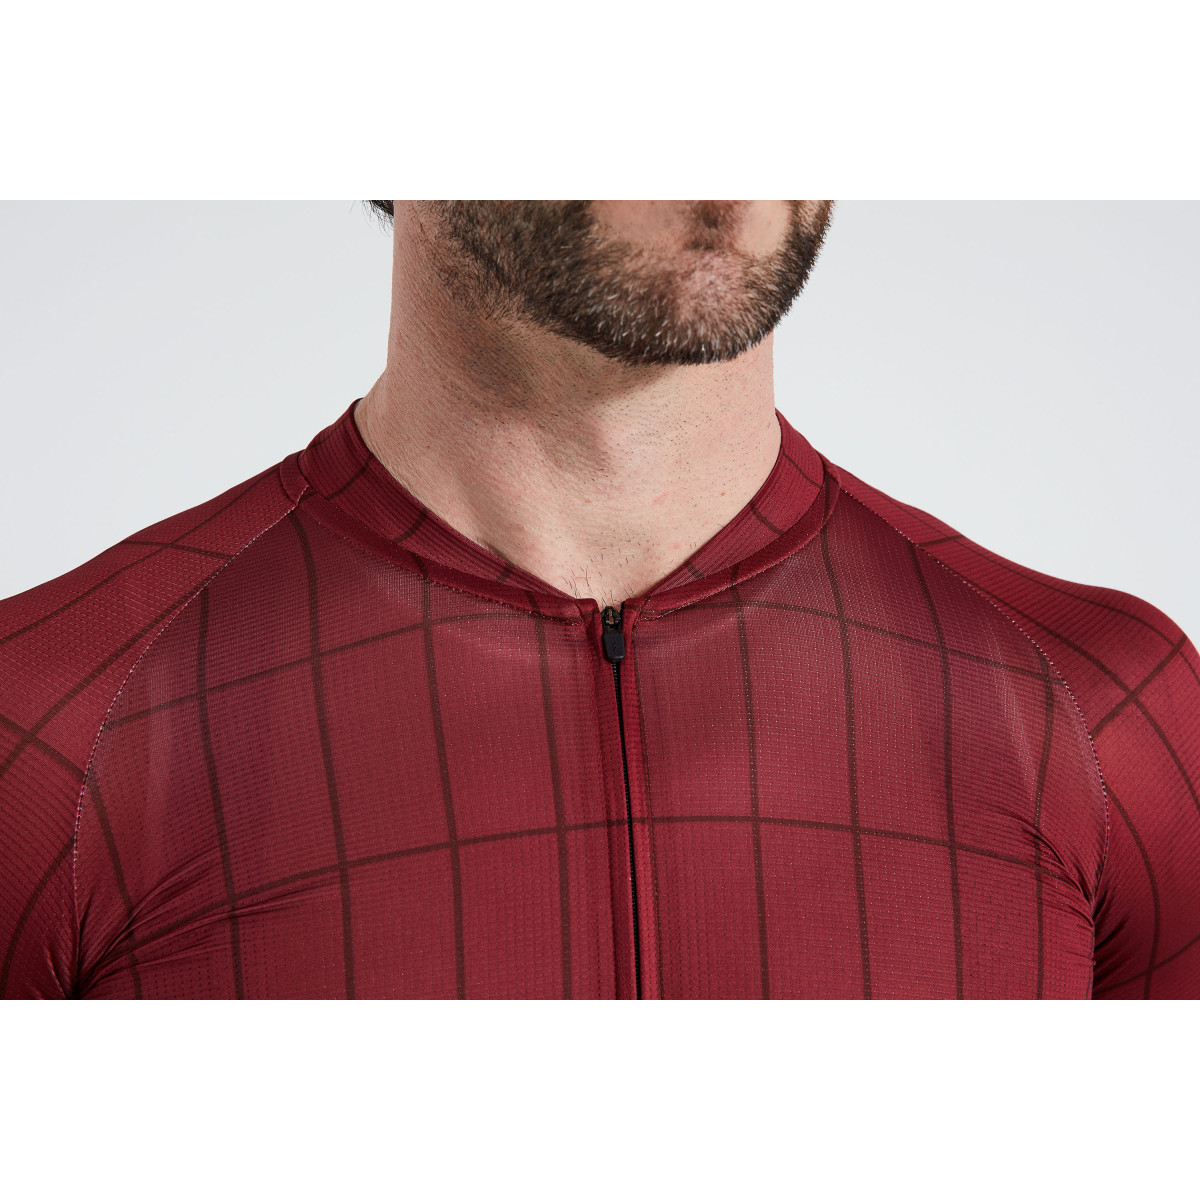 Specialized Men's SL Air Speed of Light vyriški marškinėliai / Infrared